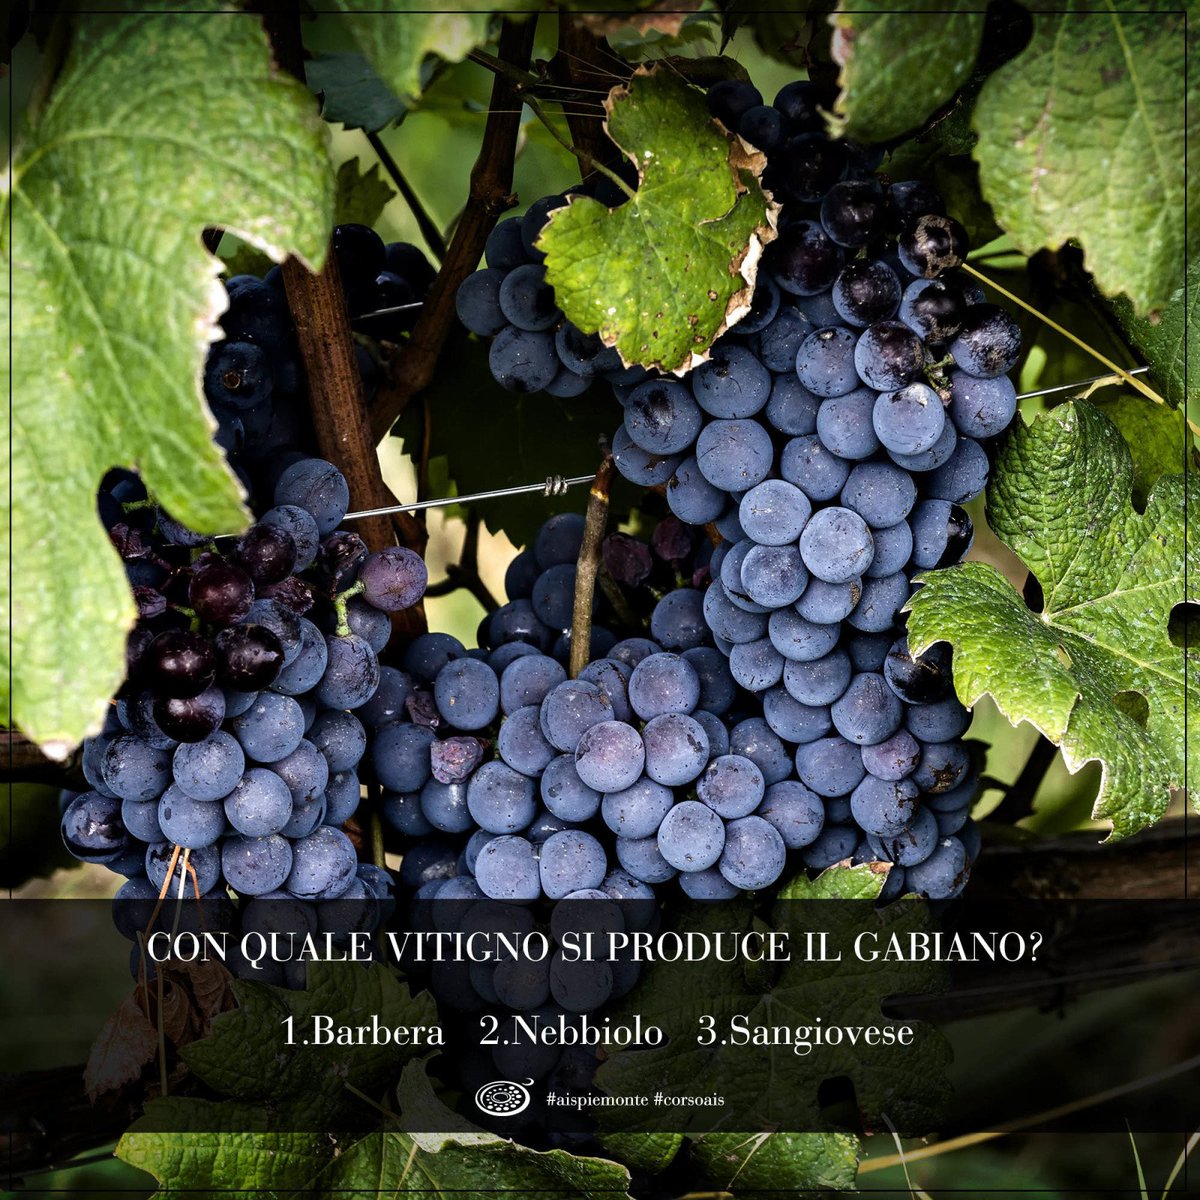 #Sommelier iniziamo il week-end con un #wine quiz! Chi sa rispondere correttamente a questa domanda? Con quale vitigno si produce il #Gabiano?